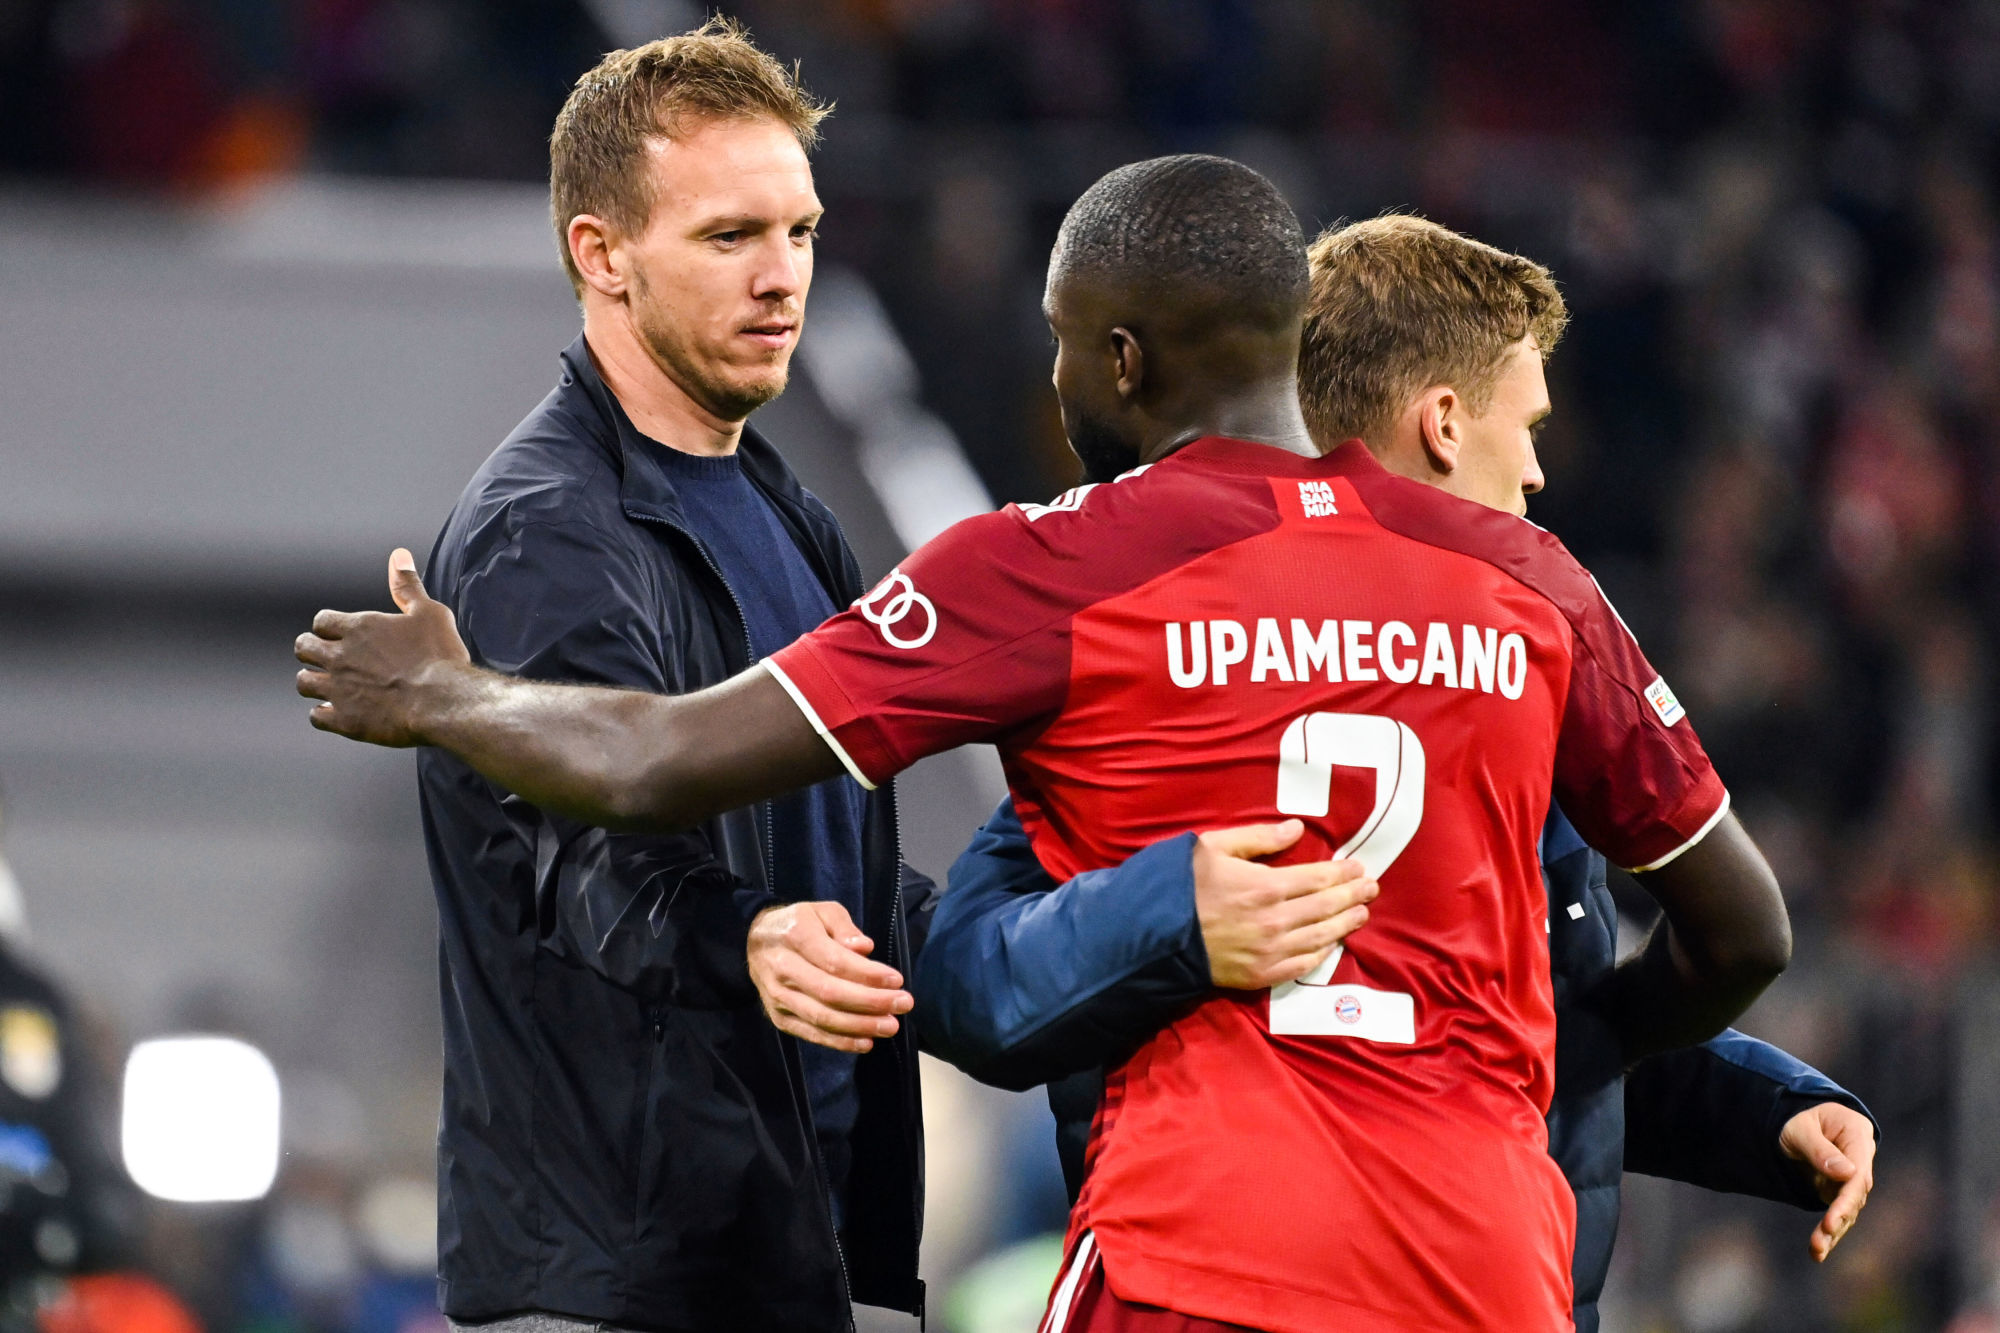 Bayern : Nagelsmann voit Upamecano titulaire avec les Bleus